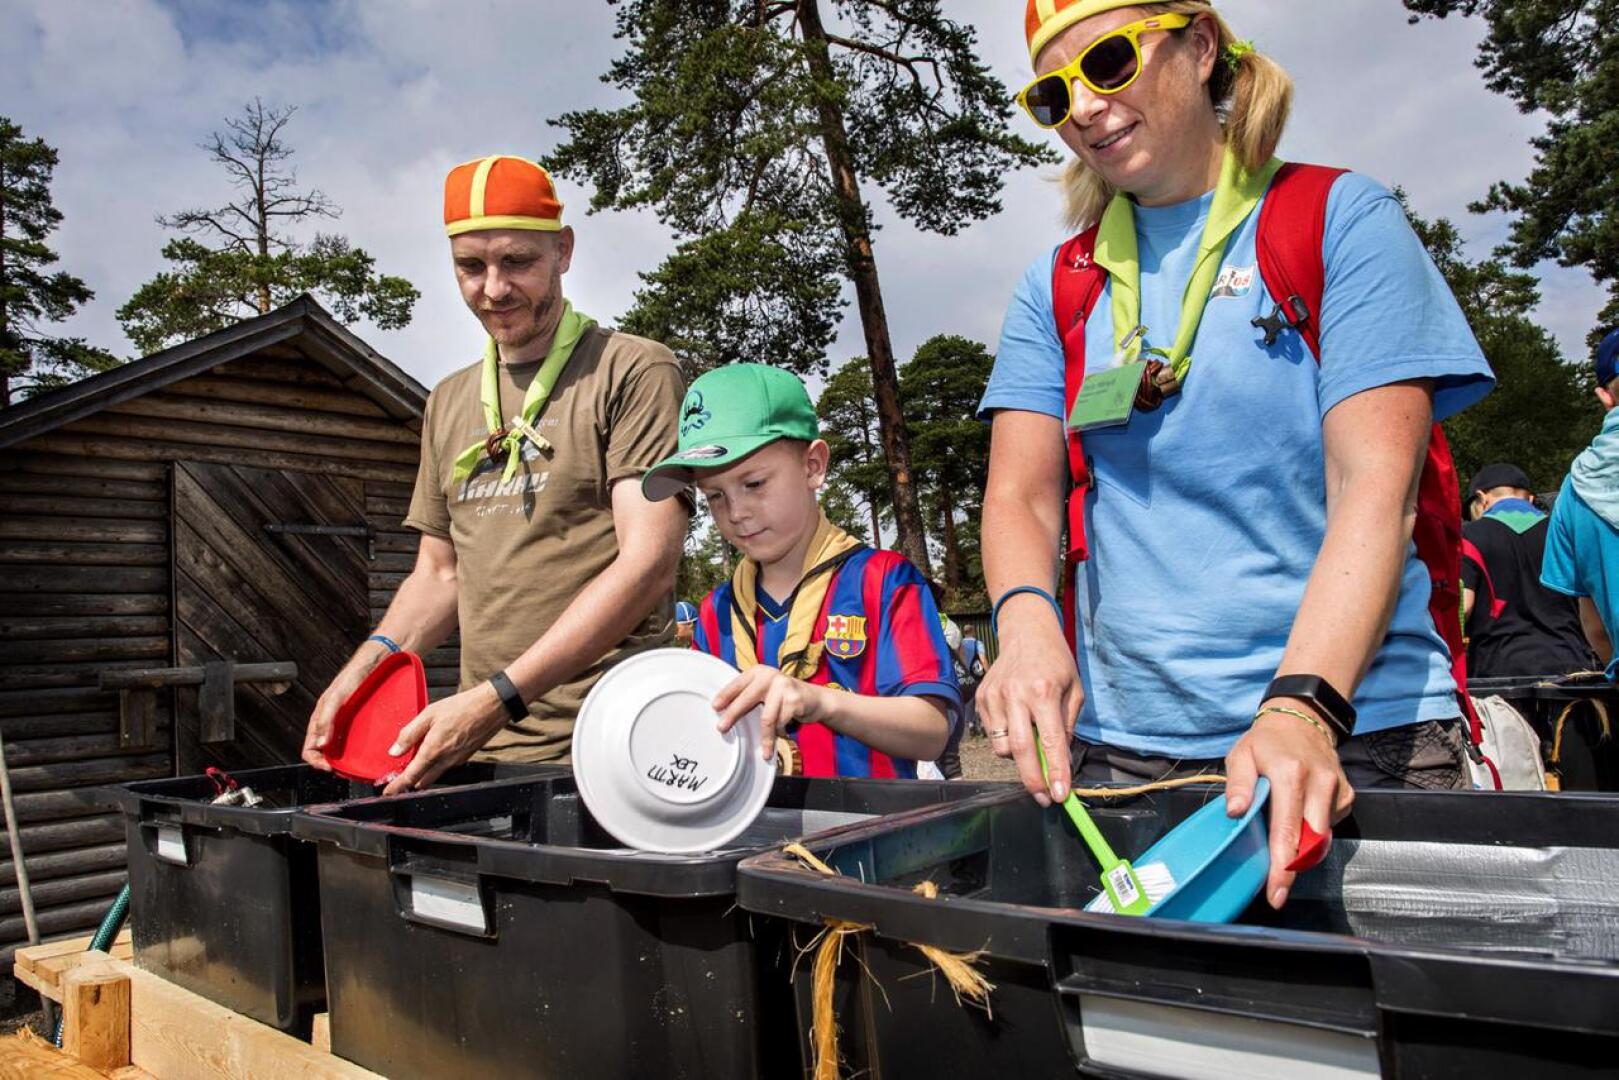 Kalajokiset Markus Pöllä, Martti Märsylä ja Marjo Märsylä käyvät kesäisin partioleireillä. Oransseihin hattuihin pukeutuneet Markus Pöllä ja Marjo Märsylä järjestävät leirillä tulilaakson ohjelmaa.